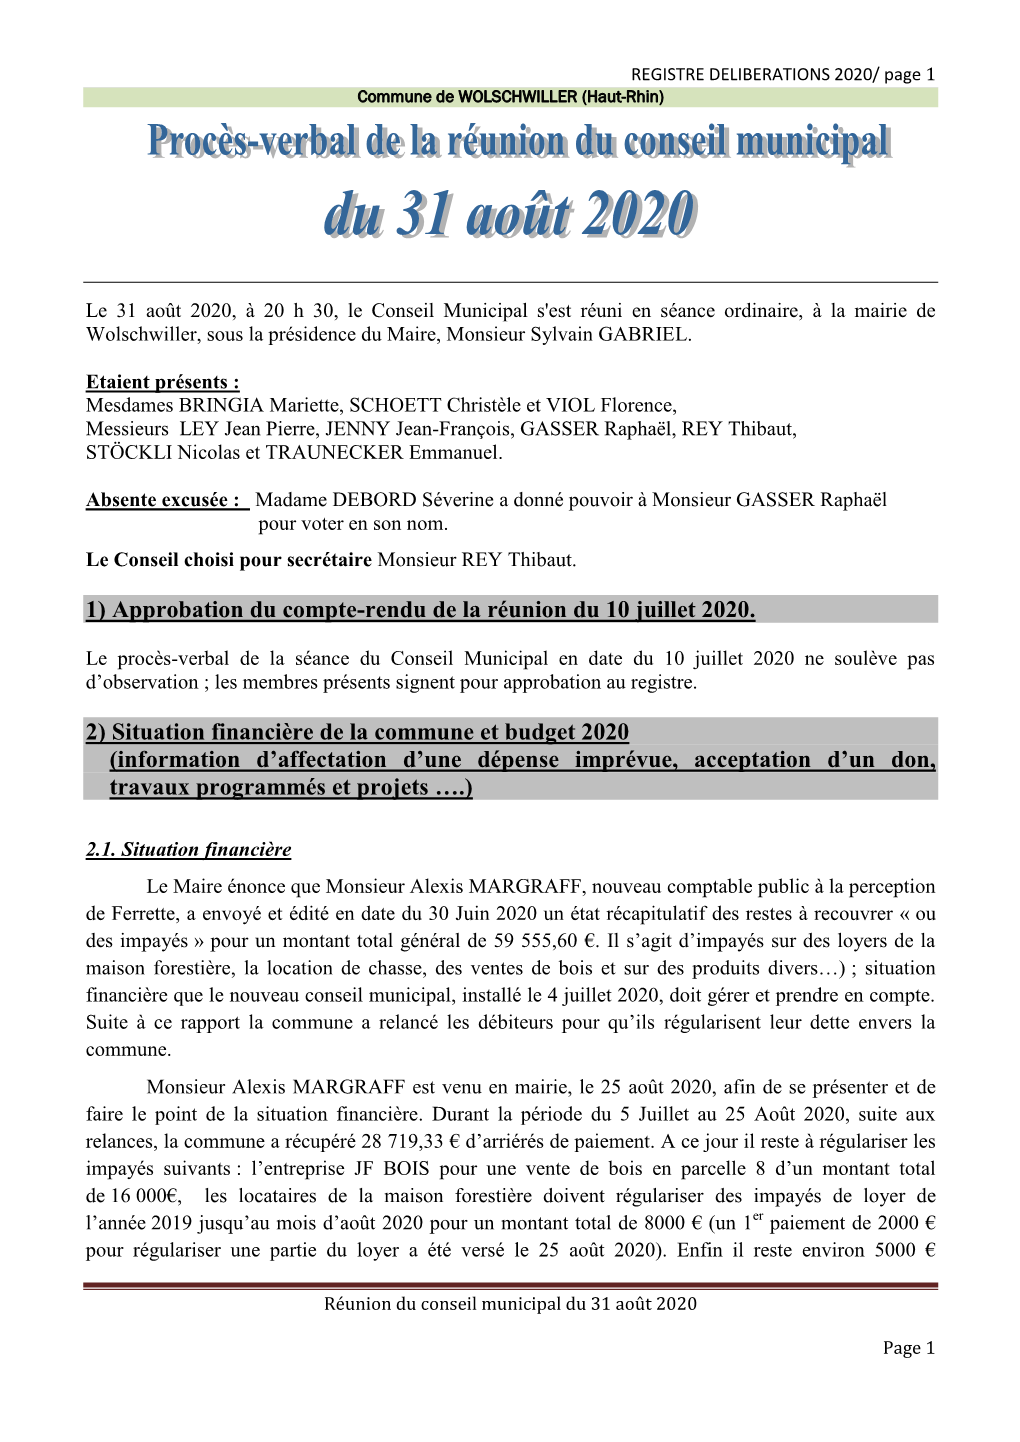 1) Approbation Du Compte-Rendu De La Réunion Du 10 Juillet 2020. 2